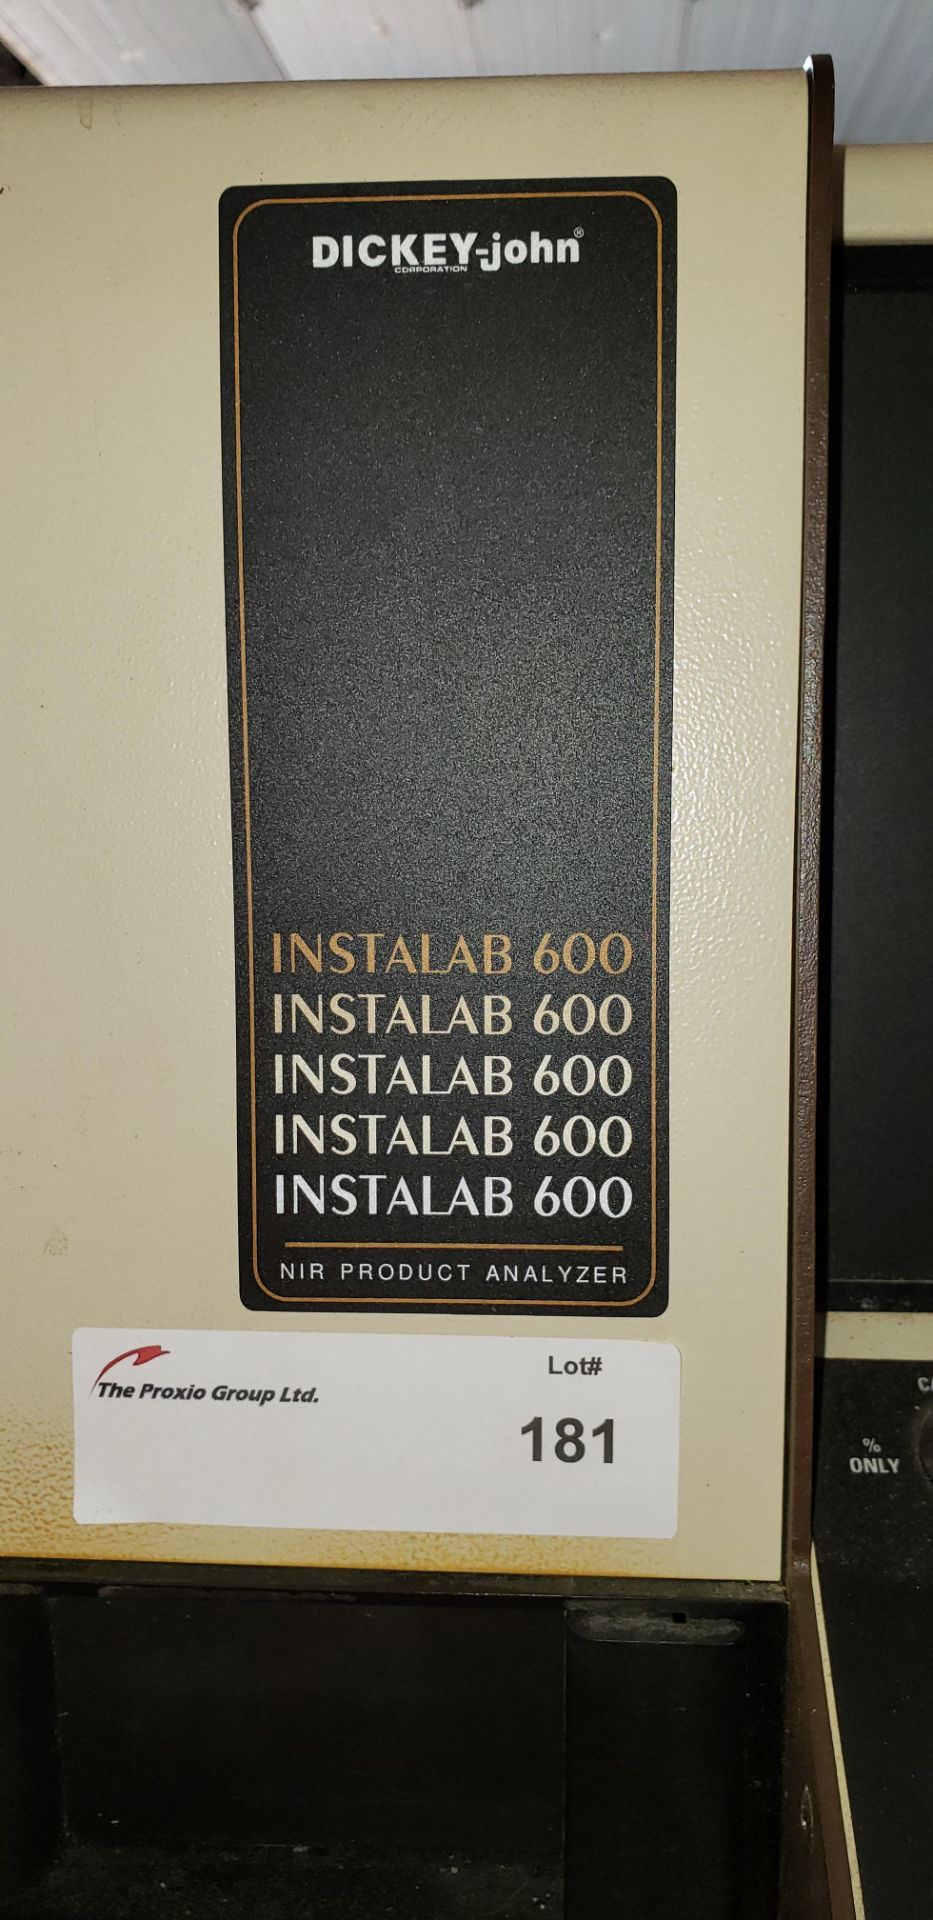 DICKEY-john instalab 600, with near infrared analyzer - Image 2 of 7